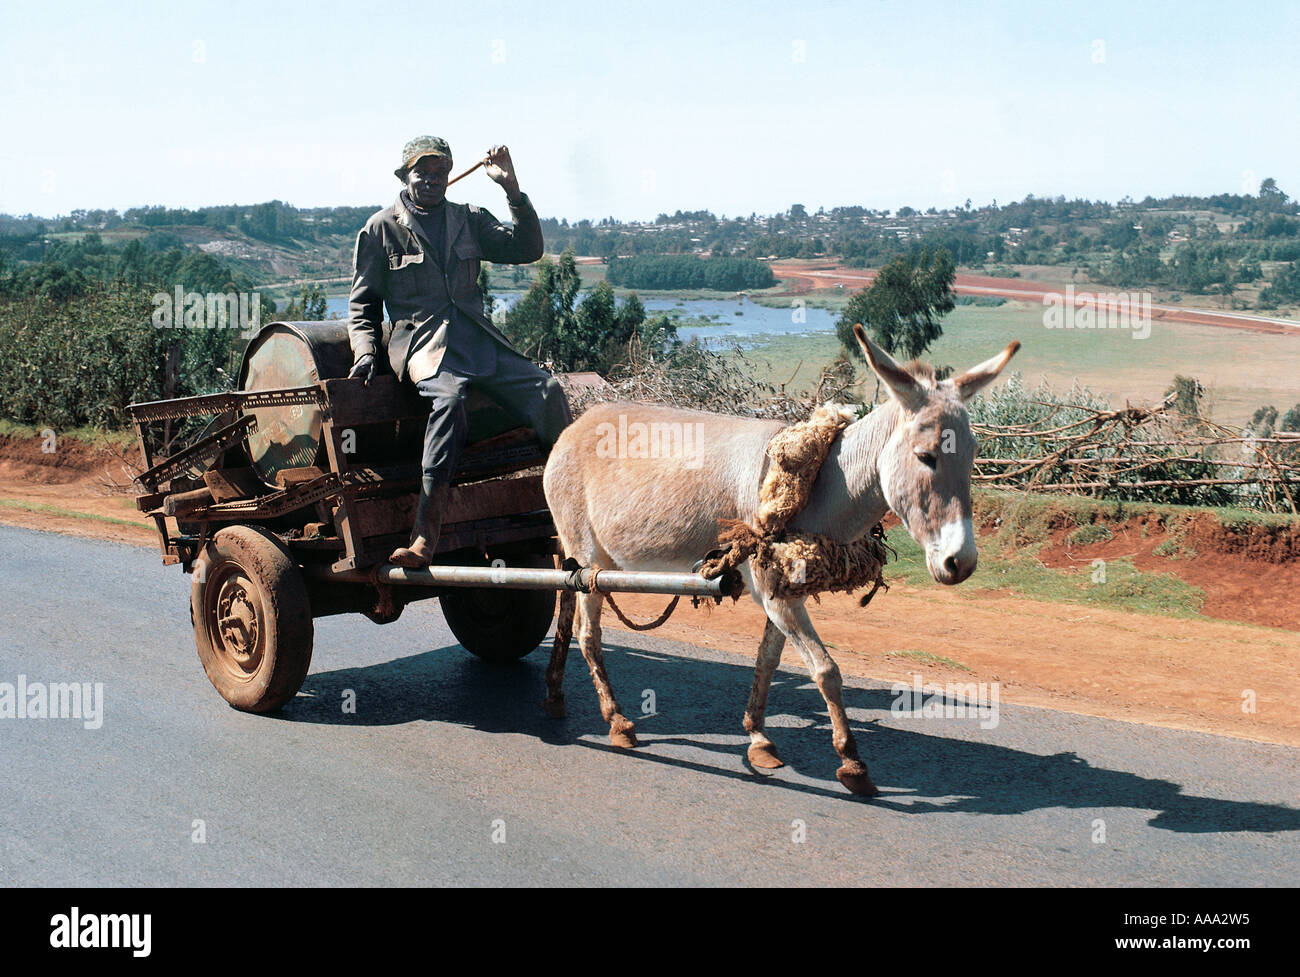 Homme Kikuyu sur un âne transportant un tambour d'eau à proximité de la Province centrale Limuru Kenya Afrique de l'Est Banque D'Images